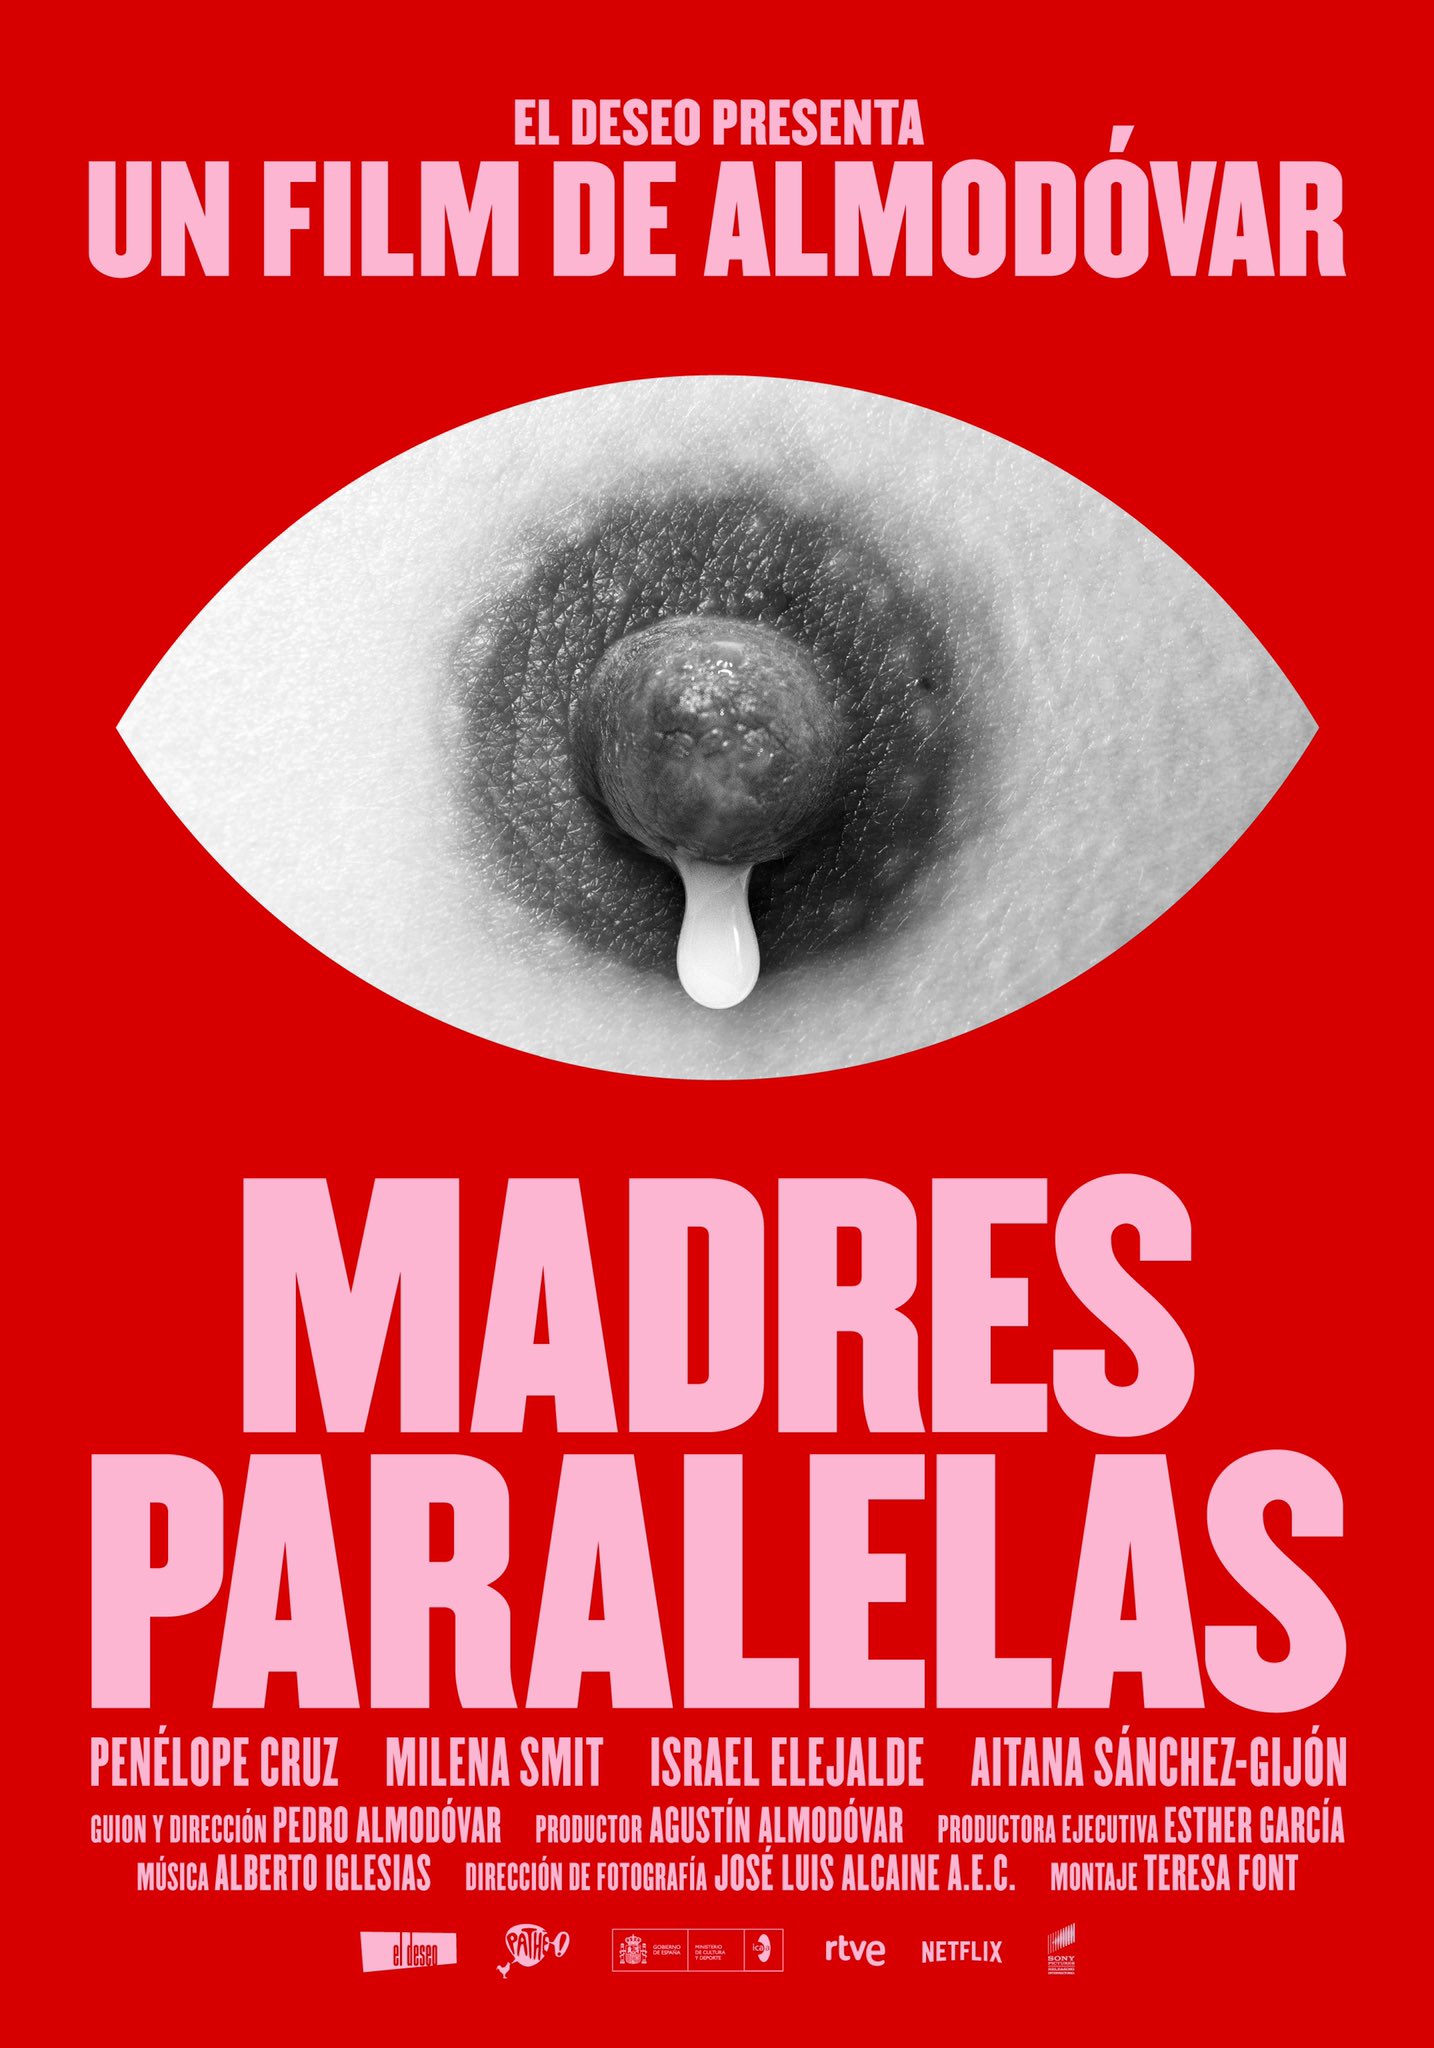 El cartel definitivo de 'Madres paralelas', en primicia en RTVE